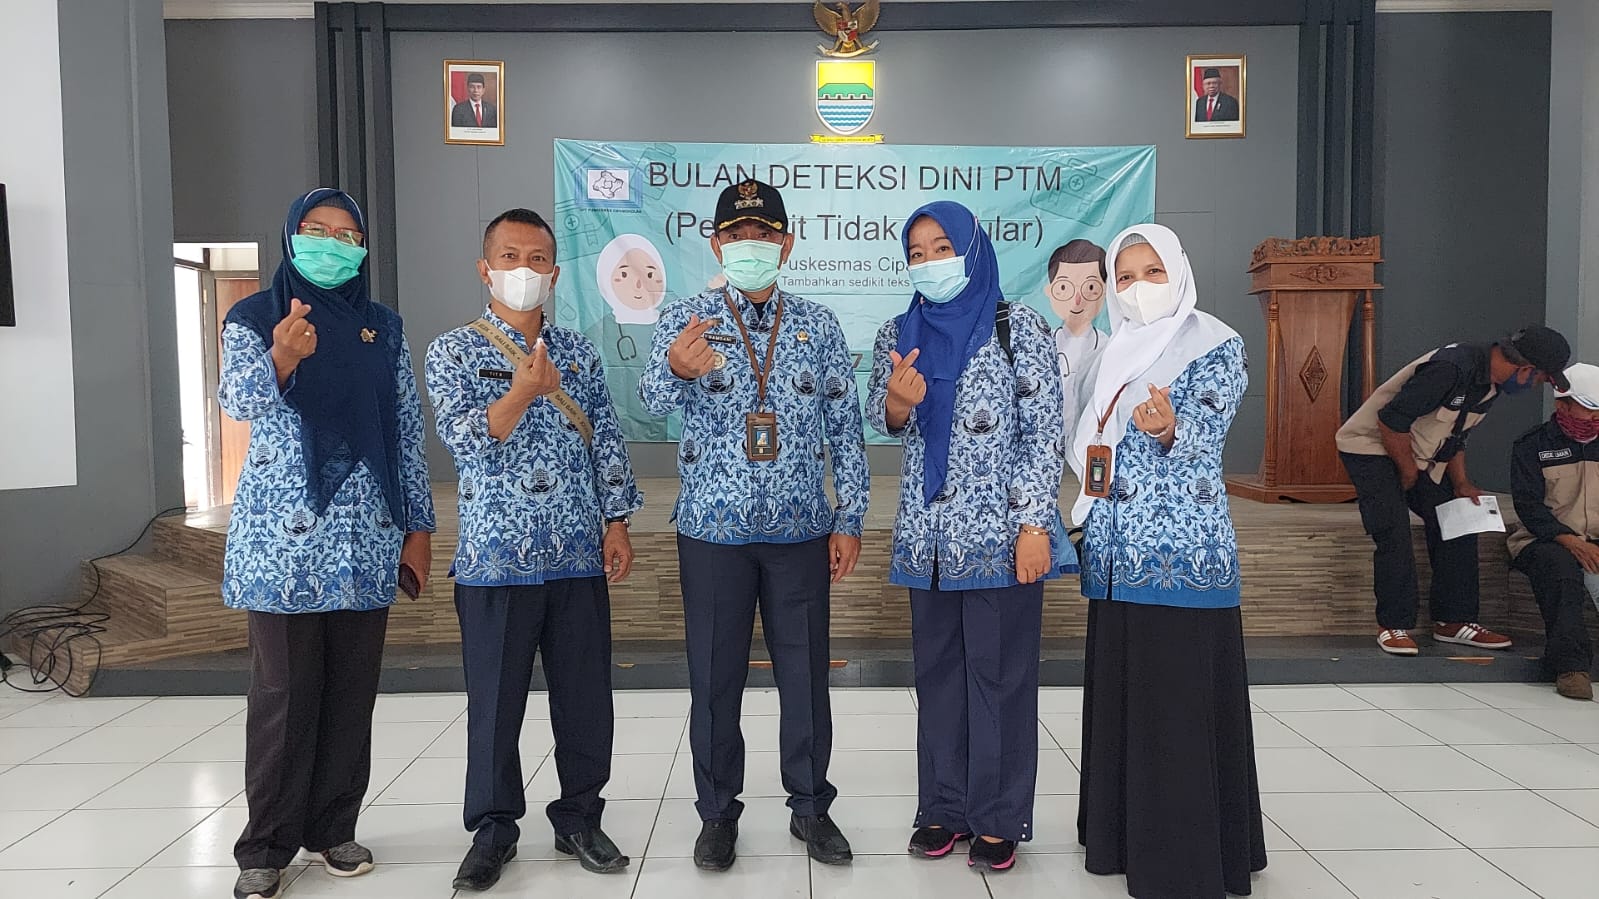 Kegiatan Bulan Deteksi Dini Penyakit Tidak Menular UPTD Puskesmas Cipamokolan Kota Bandung bekerja sama dengan Kecamatan Rancasari 17 Mei 2022